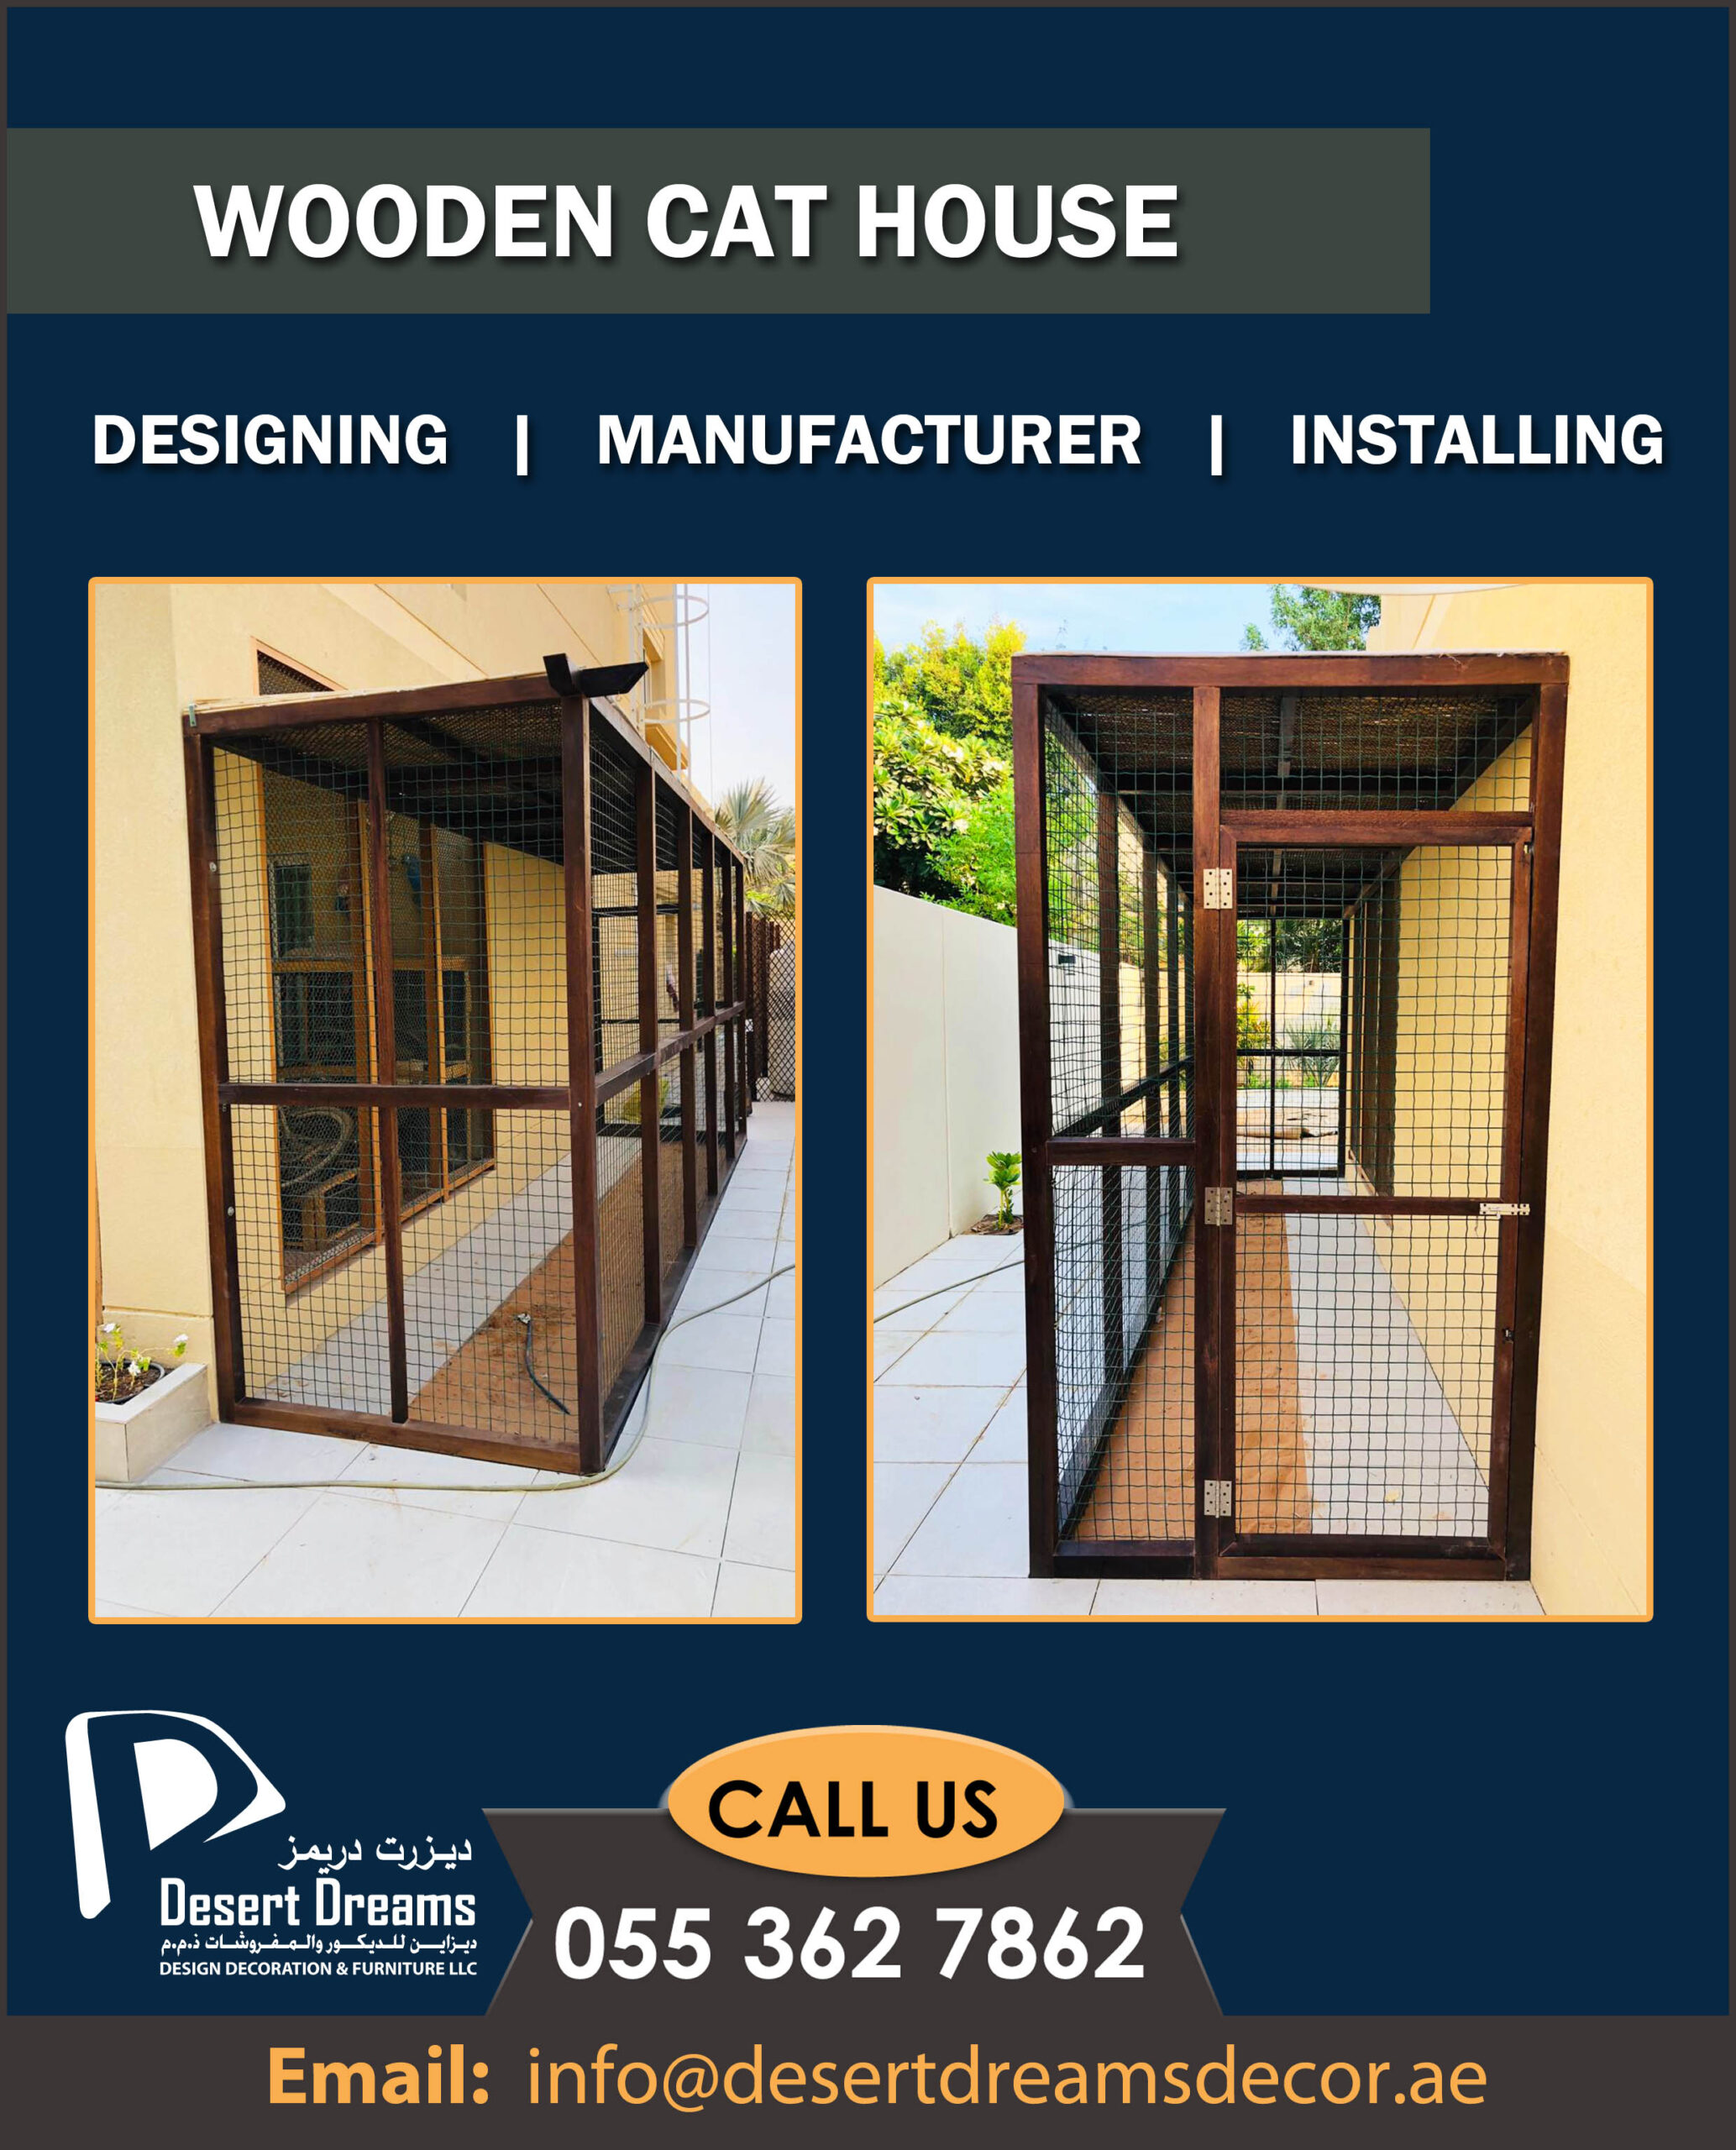 Wooden cat House in UAE.jpg